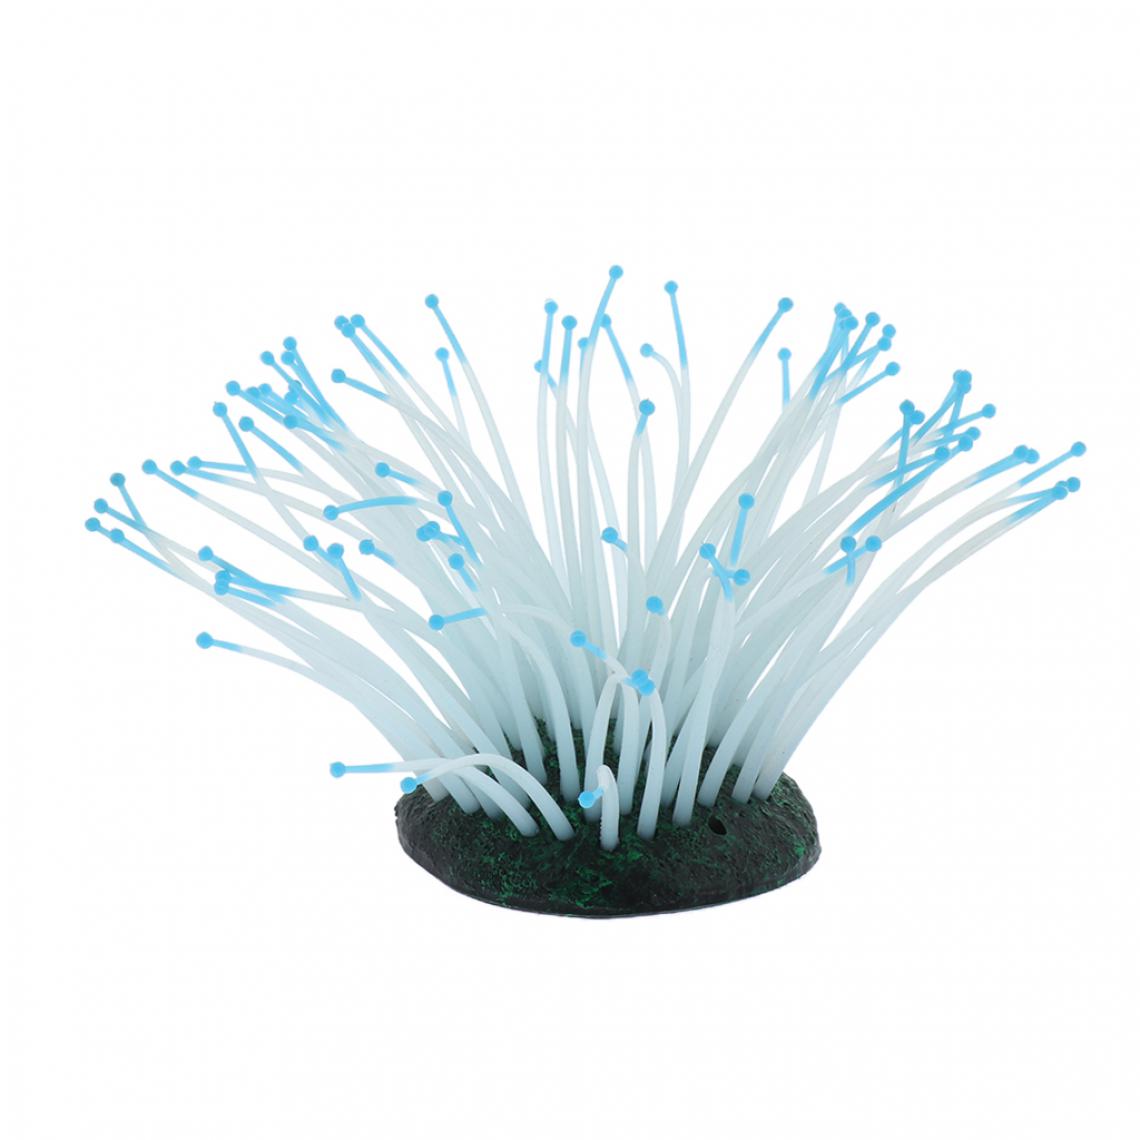 marque generique - 1 Pc Glowing Silicone Aquarium Paysage Artificielle Mer Anémone Corail Bleu - Décoration aquarium